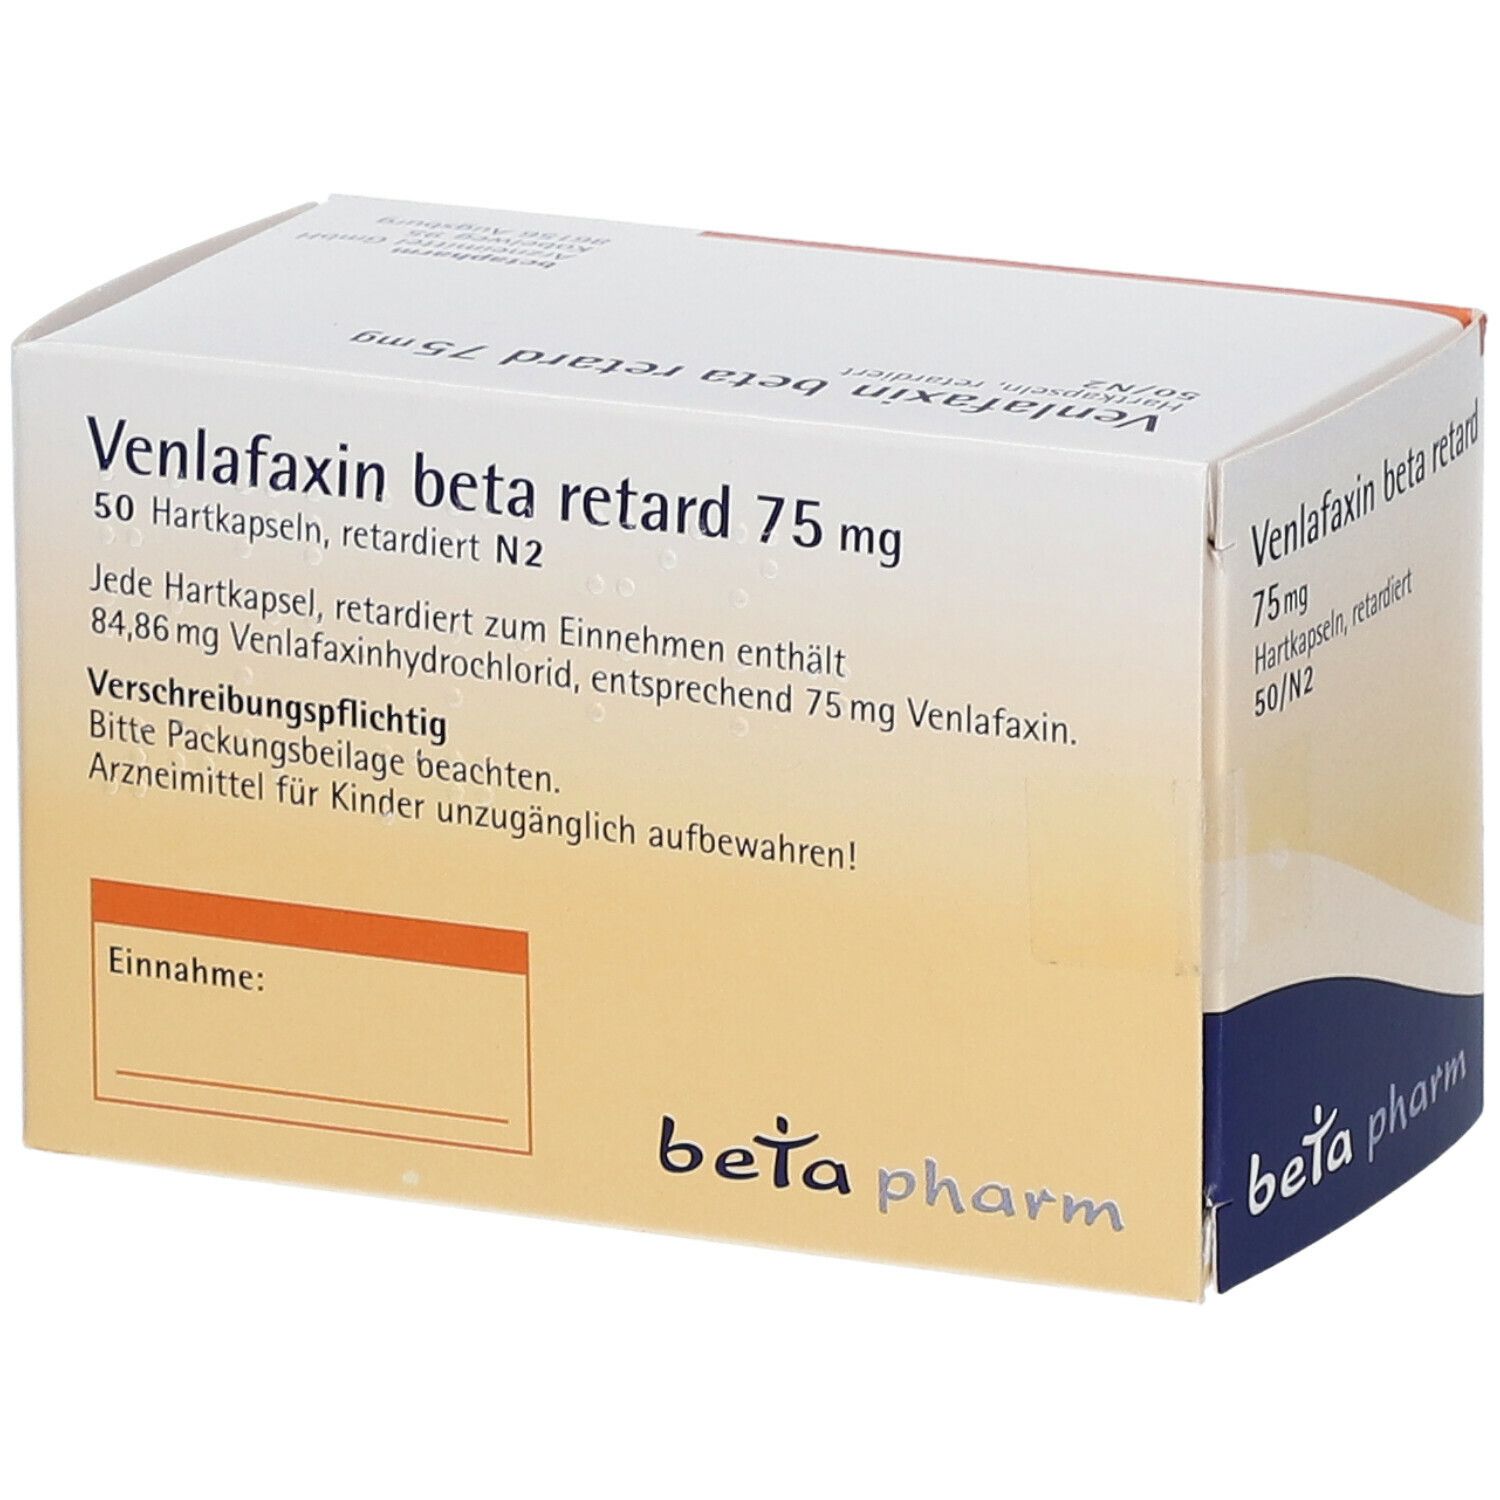 Venlafaxin beta retard 75 mg